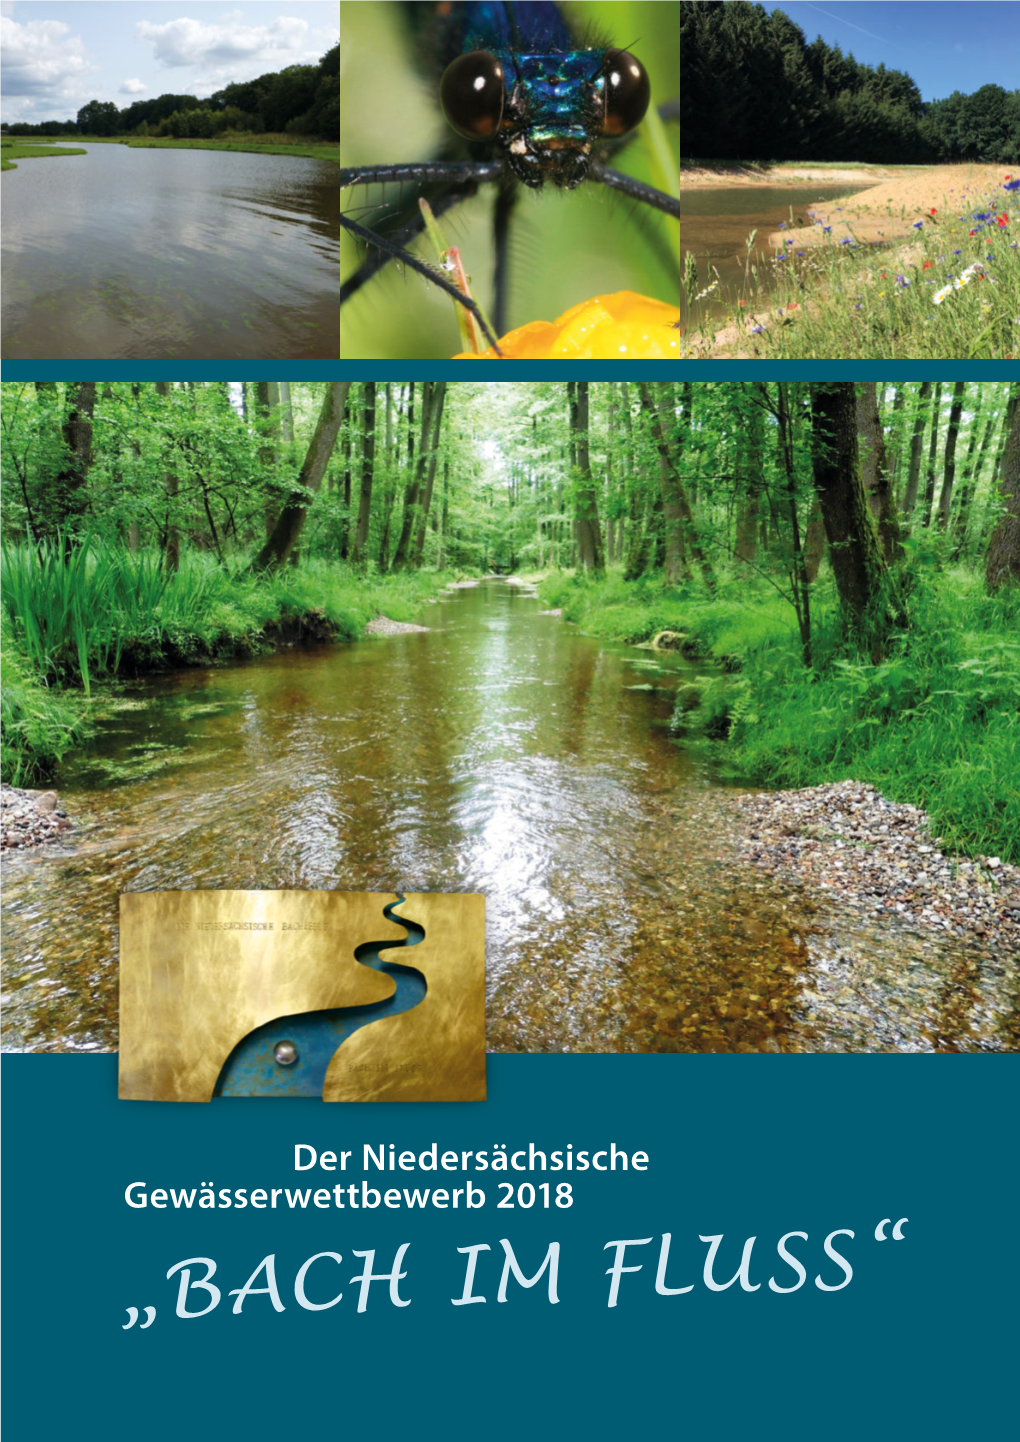 Der Niedersächsische Gewässerwettbewerb 2018 Impressum